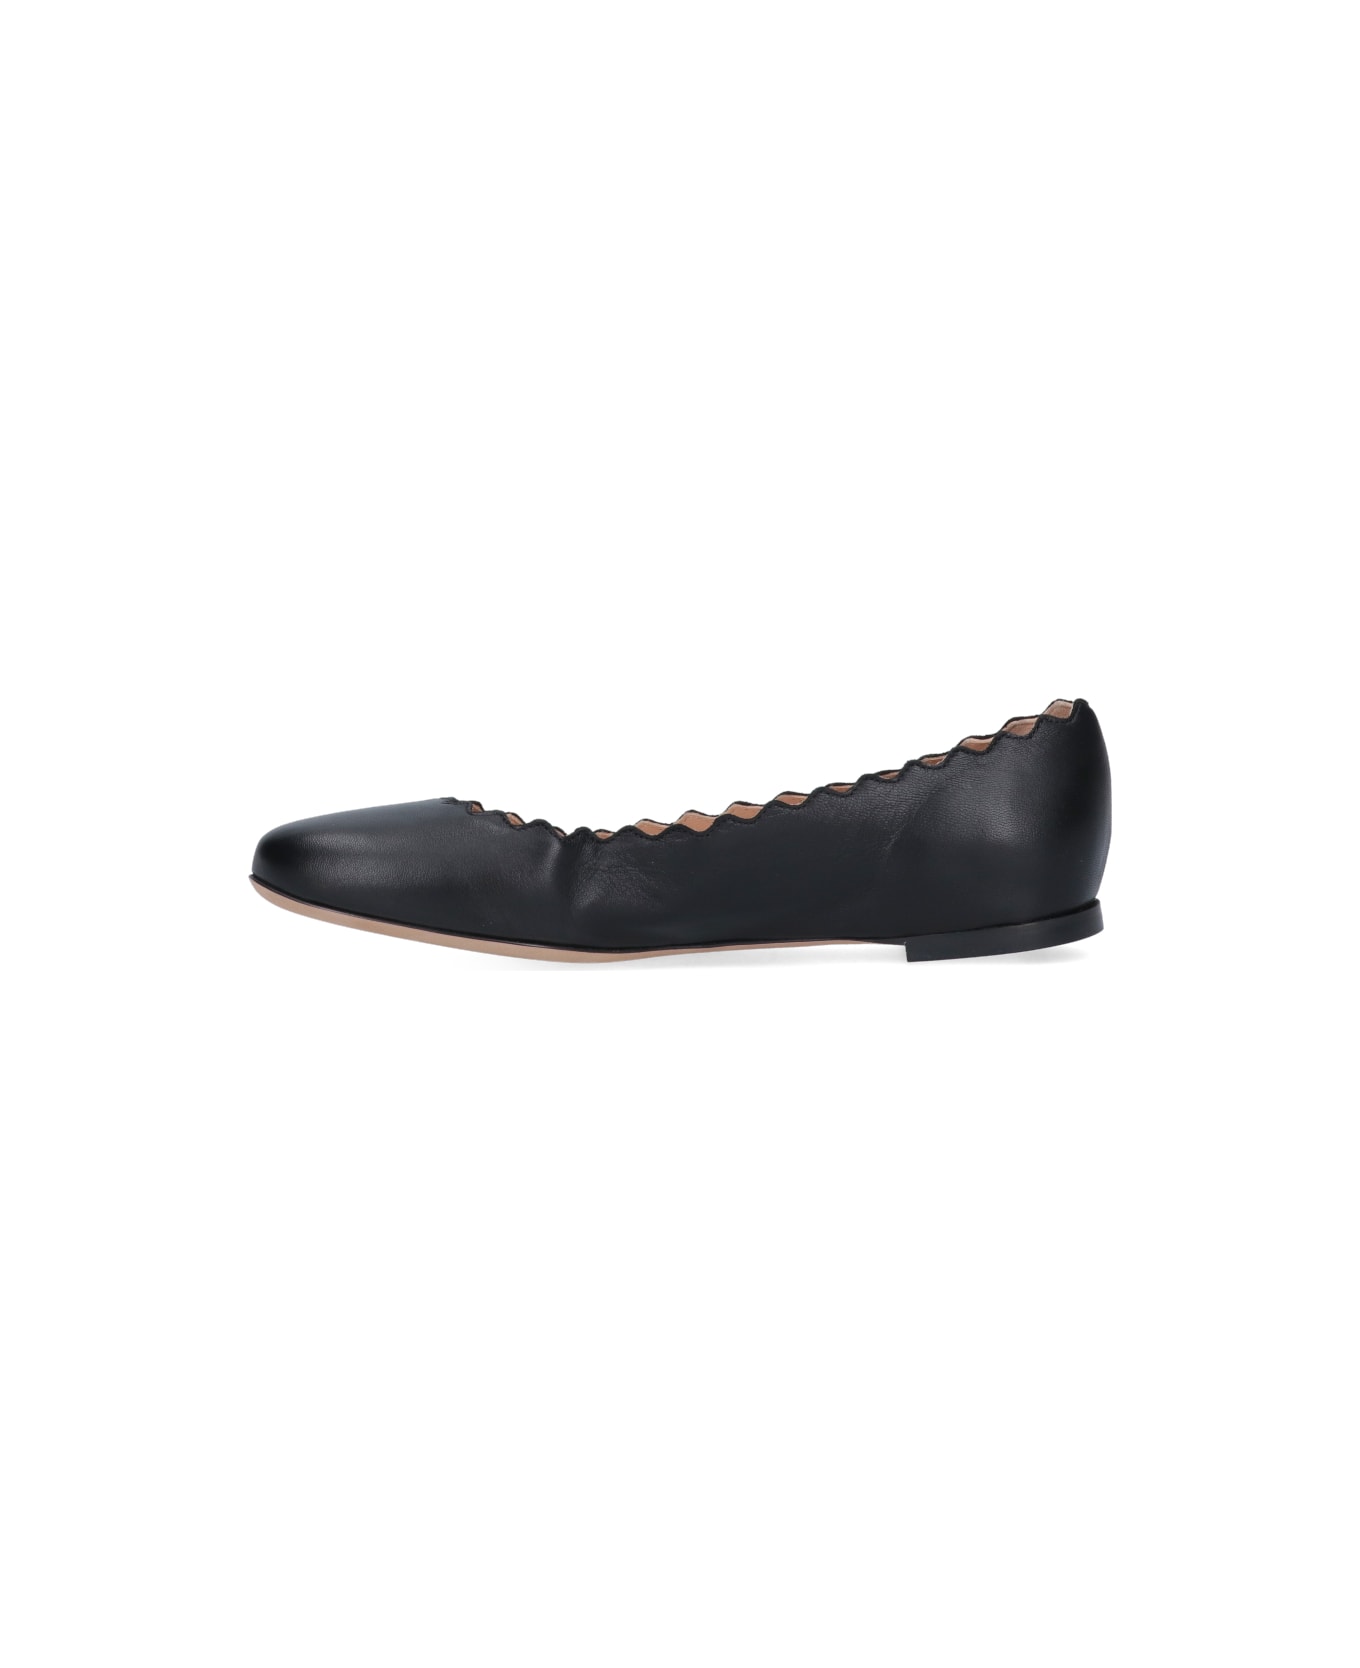 Chloé Flat Shoes Tri - Black